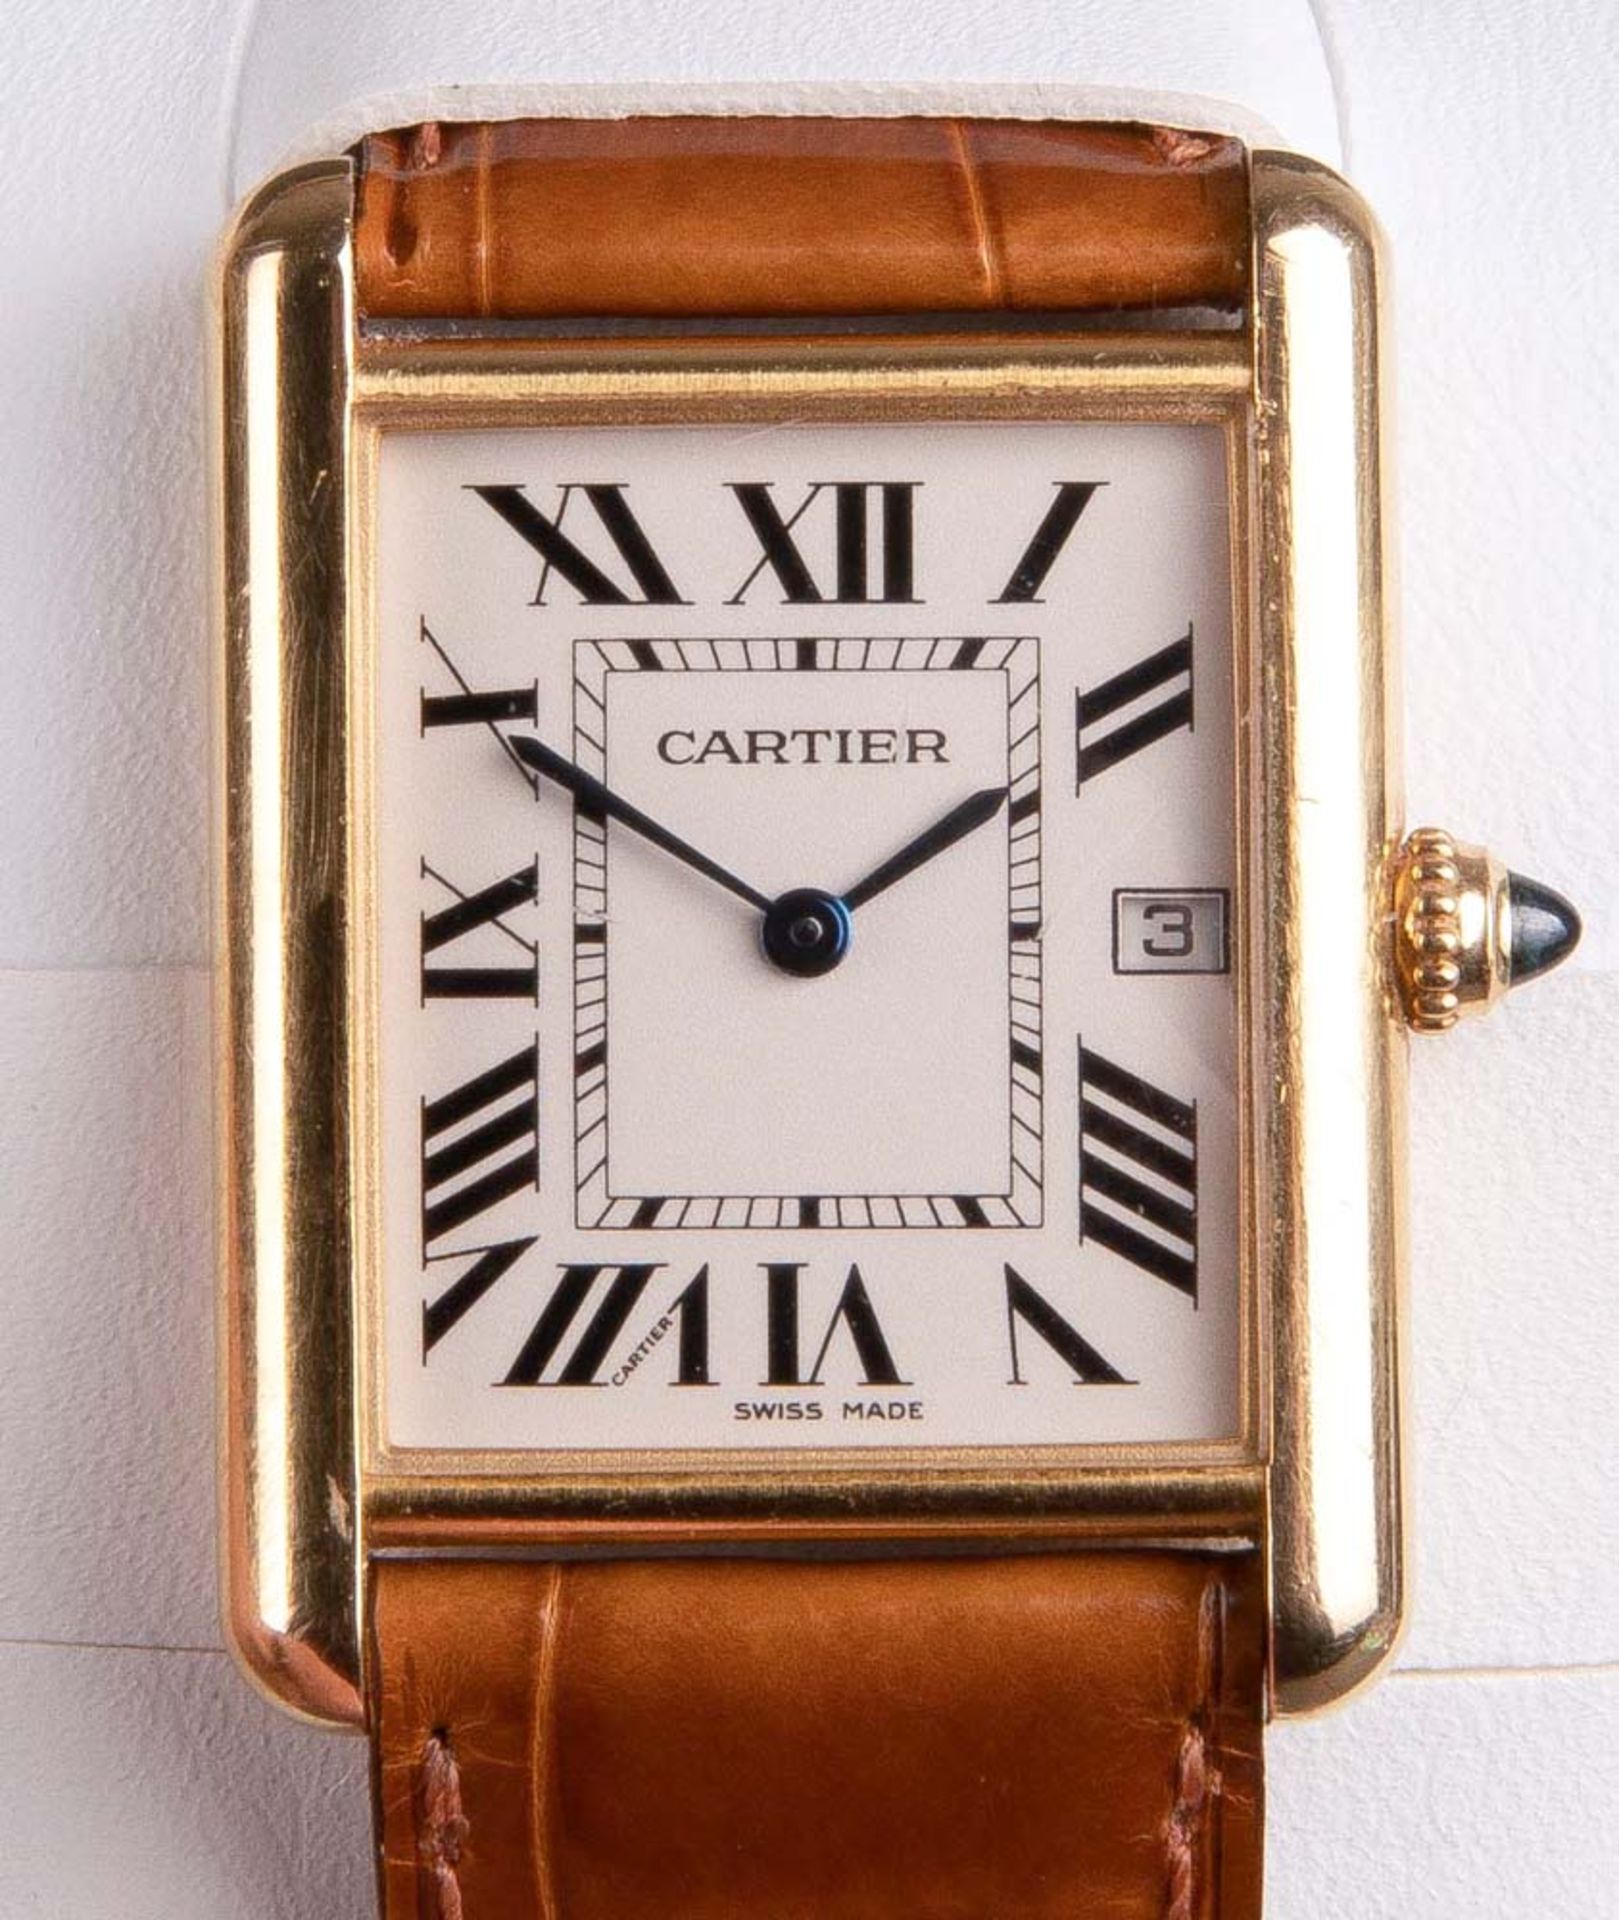 Armbanduhr, Marke „Cartier“, Nr. „100303LX“ und „2441“. 18 ct Gelbgoldgehäuse, mit Lederarmband. - Bild 2 aus 3